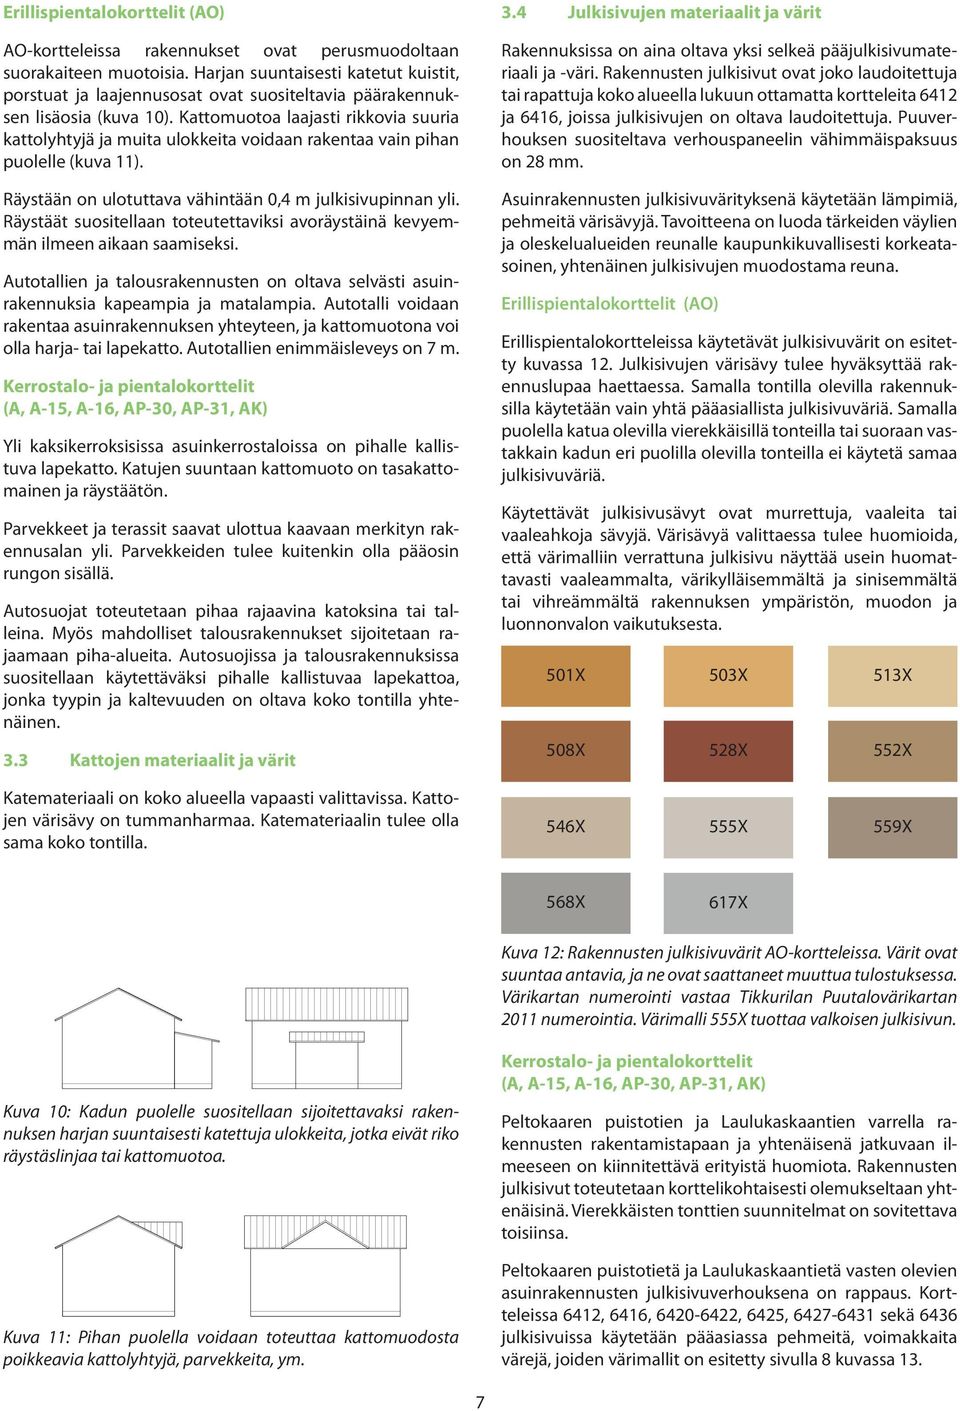 Kattomuotoa laajasti rikkovia suuria kattolyhtyjä ja muita ulokkeita voidaan rakentaa vain pihan puolelle (kuva 11). Rakennuksissa on aina oltava yksi selkeä pääjulkisivumateriaali ja -väri.